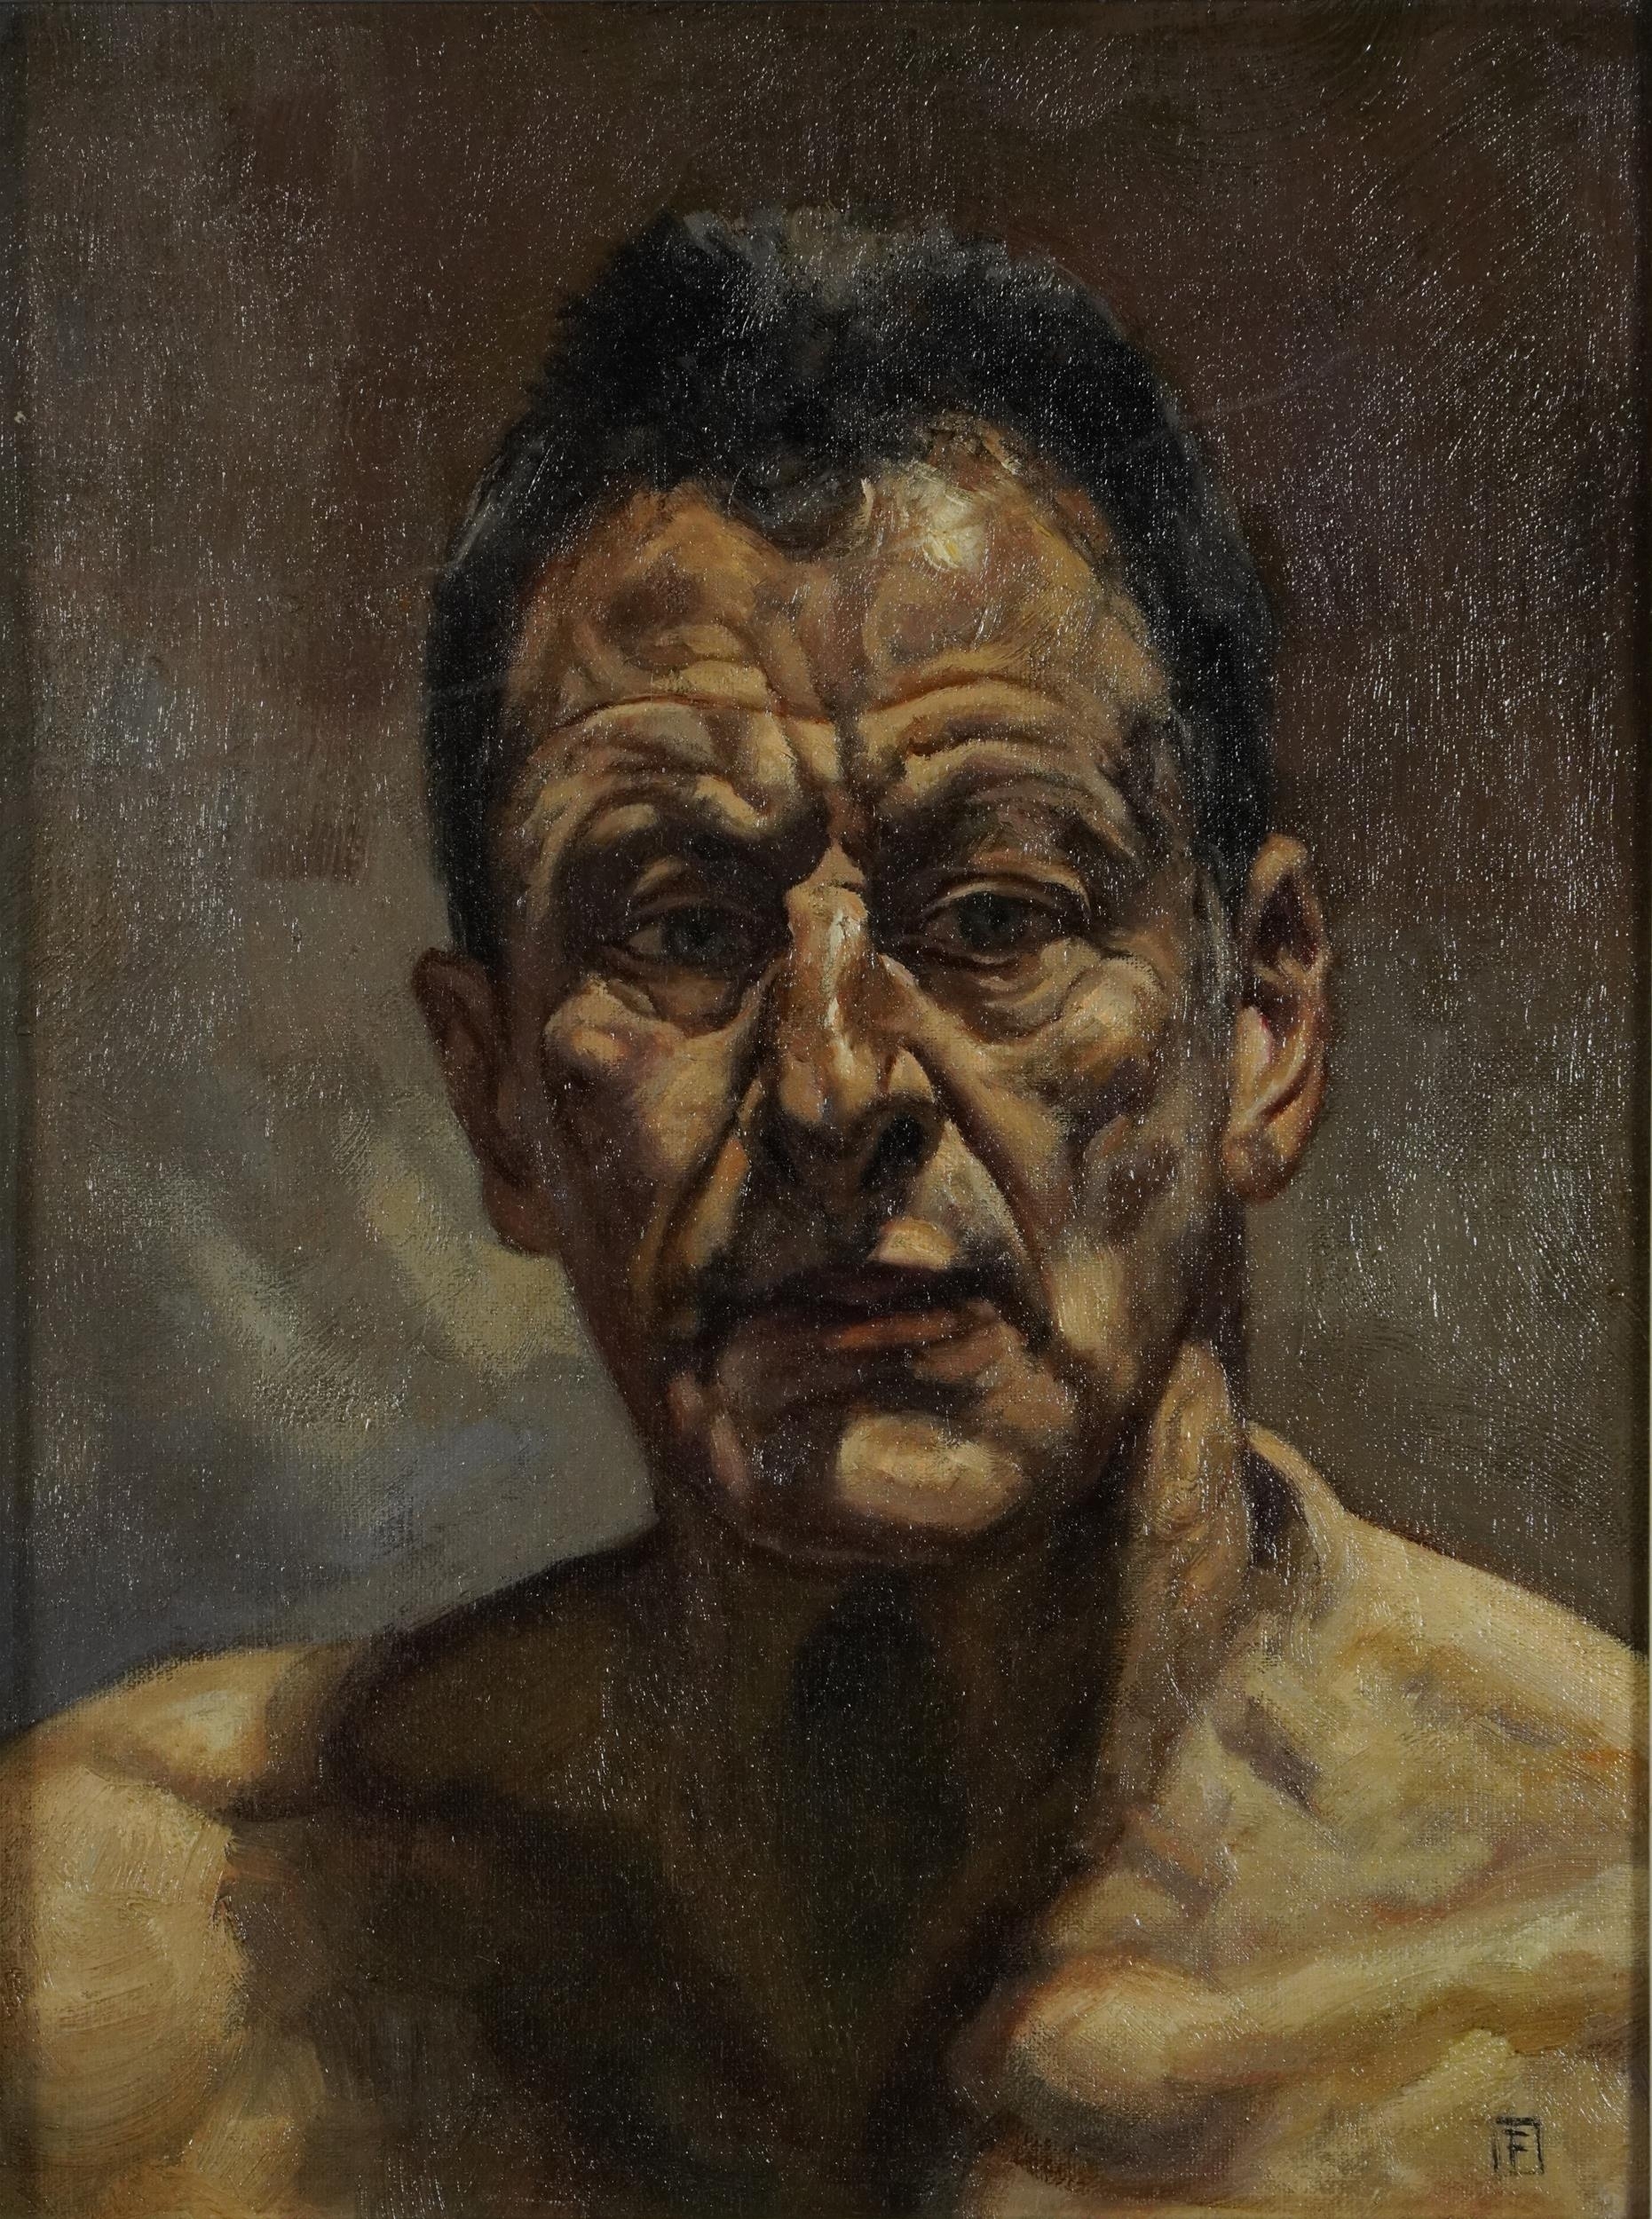 Self portrait by Lucian Freud